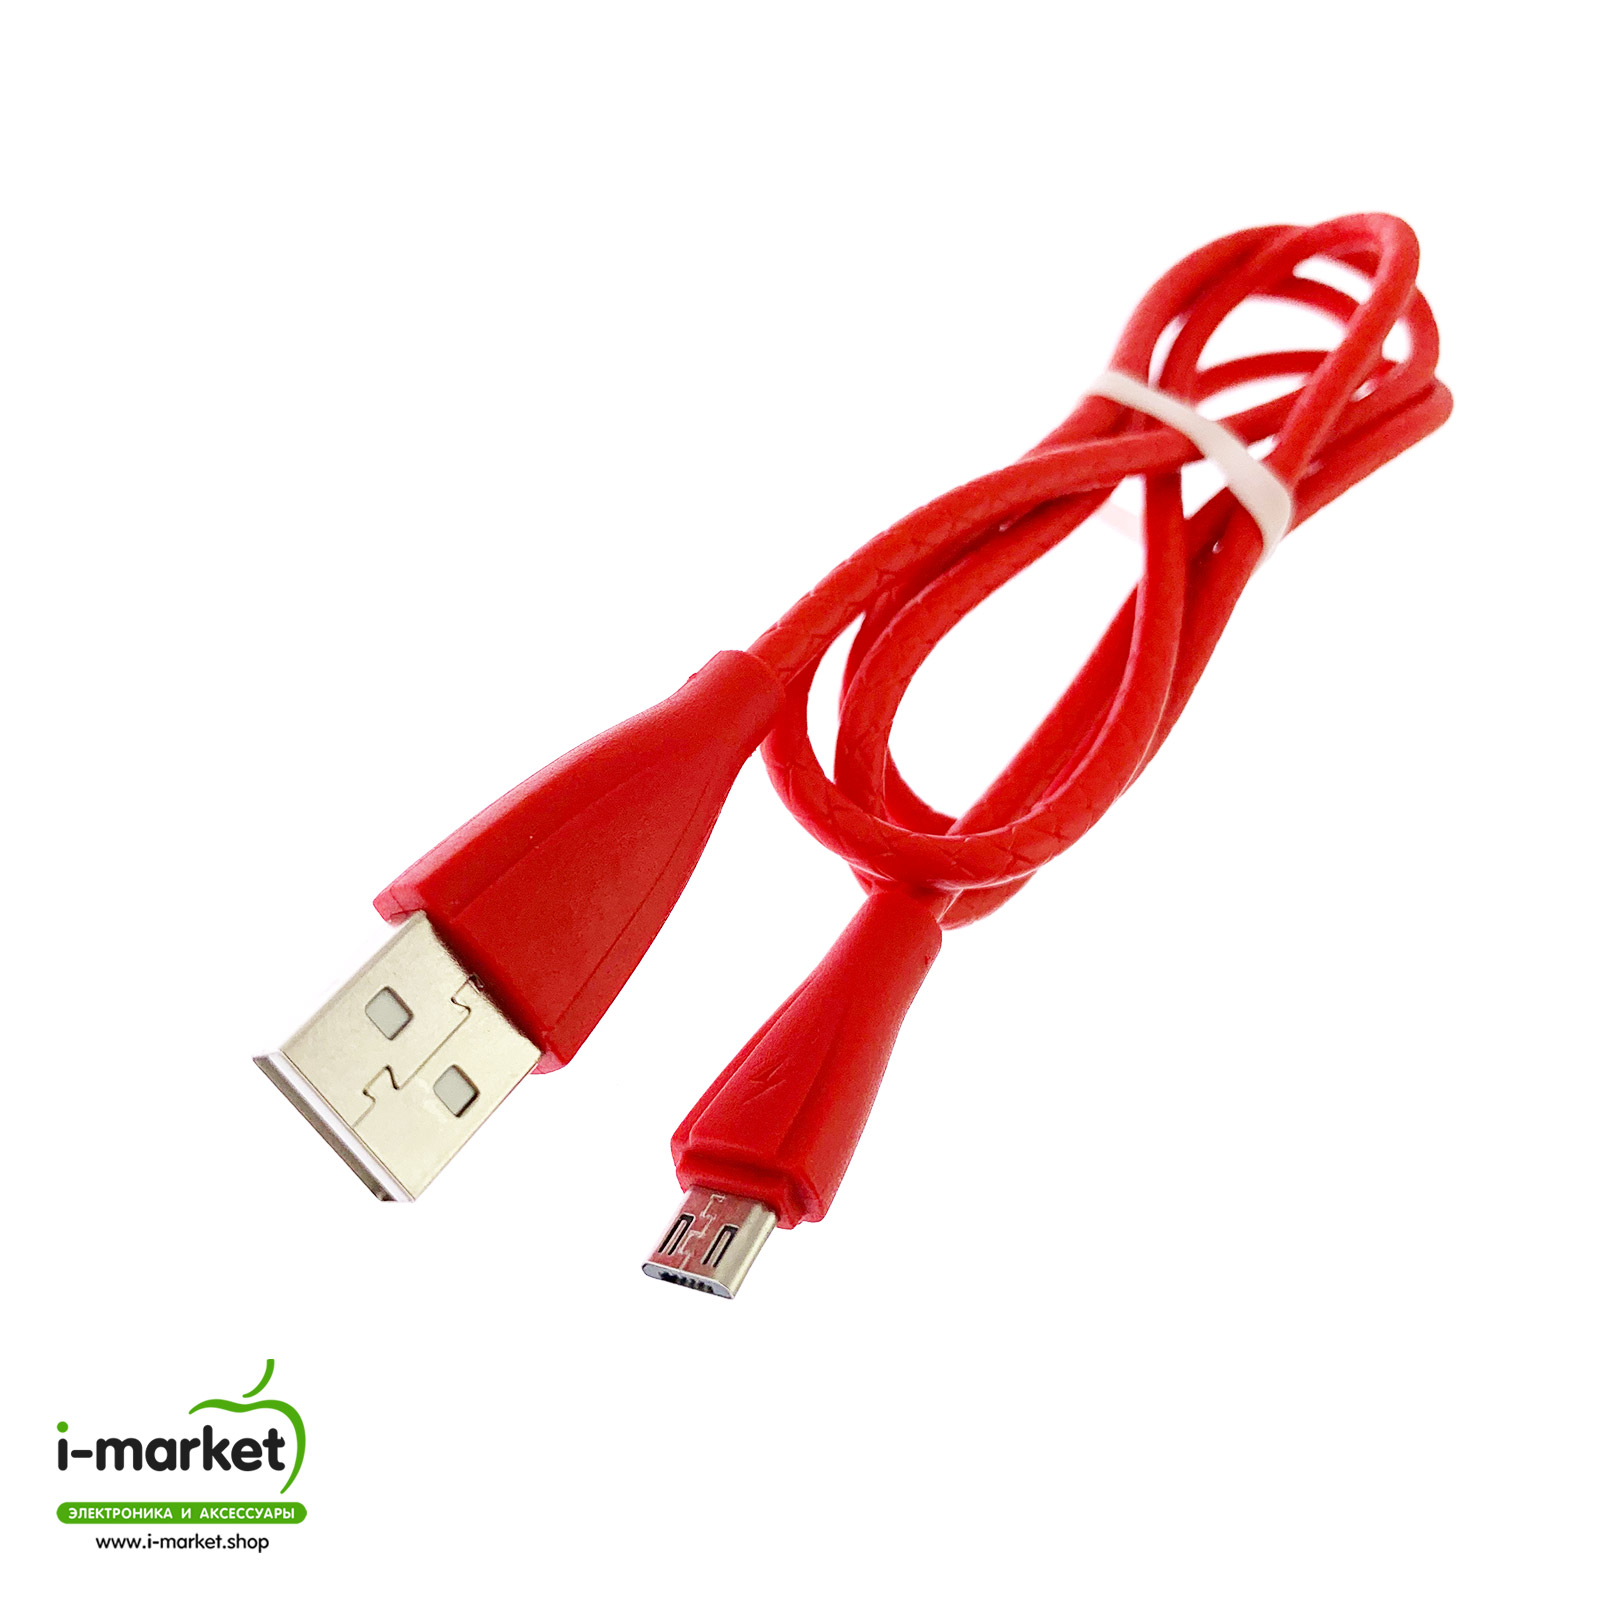 USB Дата кабель Micro USB, силиконовый, текстурированная оплетка, длина 1 метр, цвет красный.